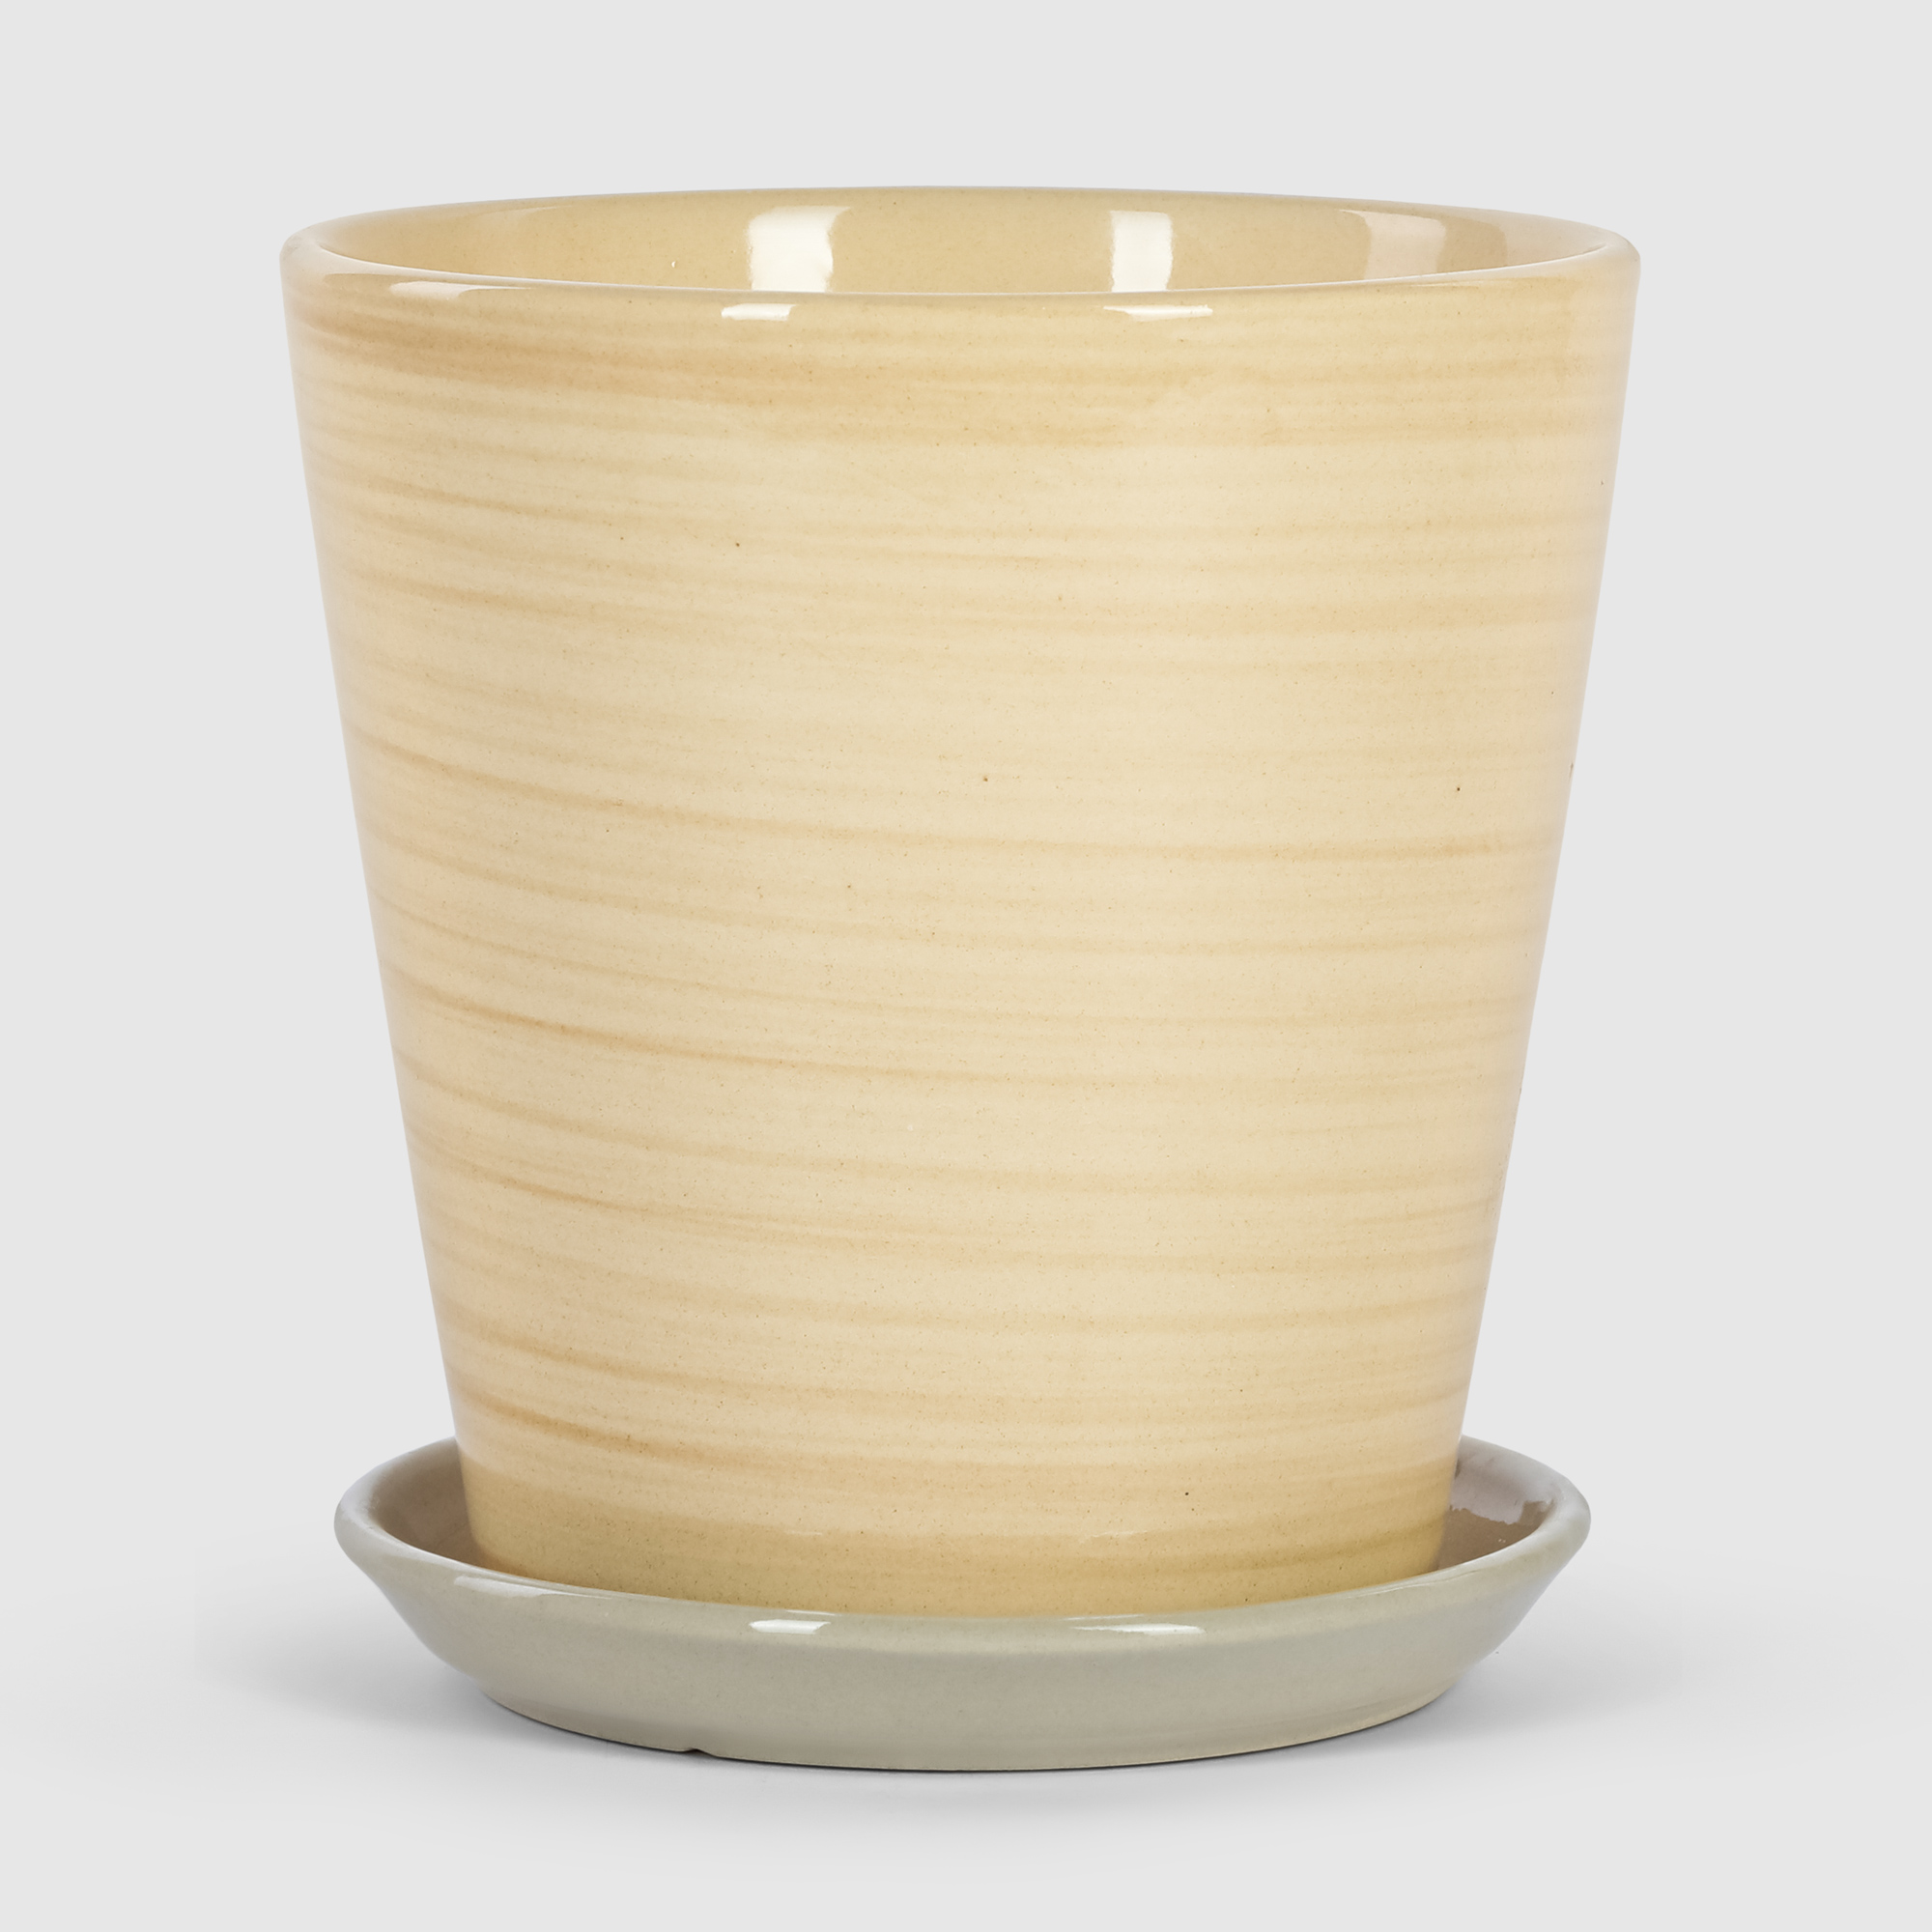 Кашпо керамическое для цветов Shine Pots 20x20см бежевое полосатое кашпо керамическое для ов shine pots 20x20см бежевое полосатое